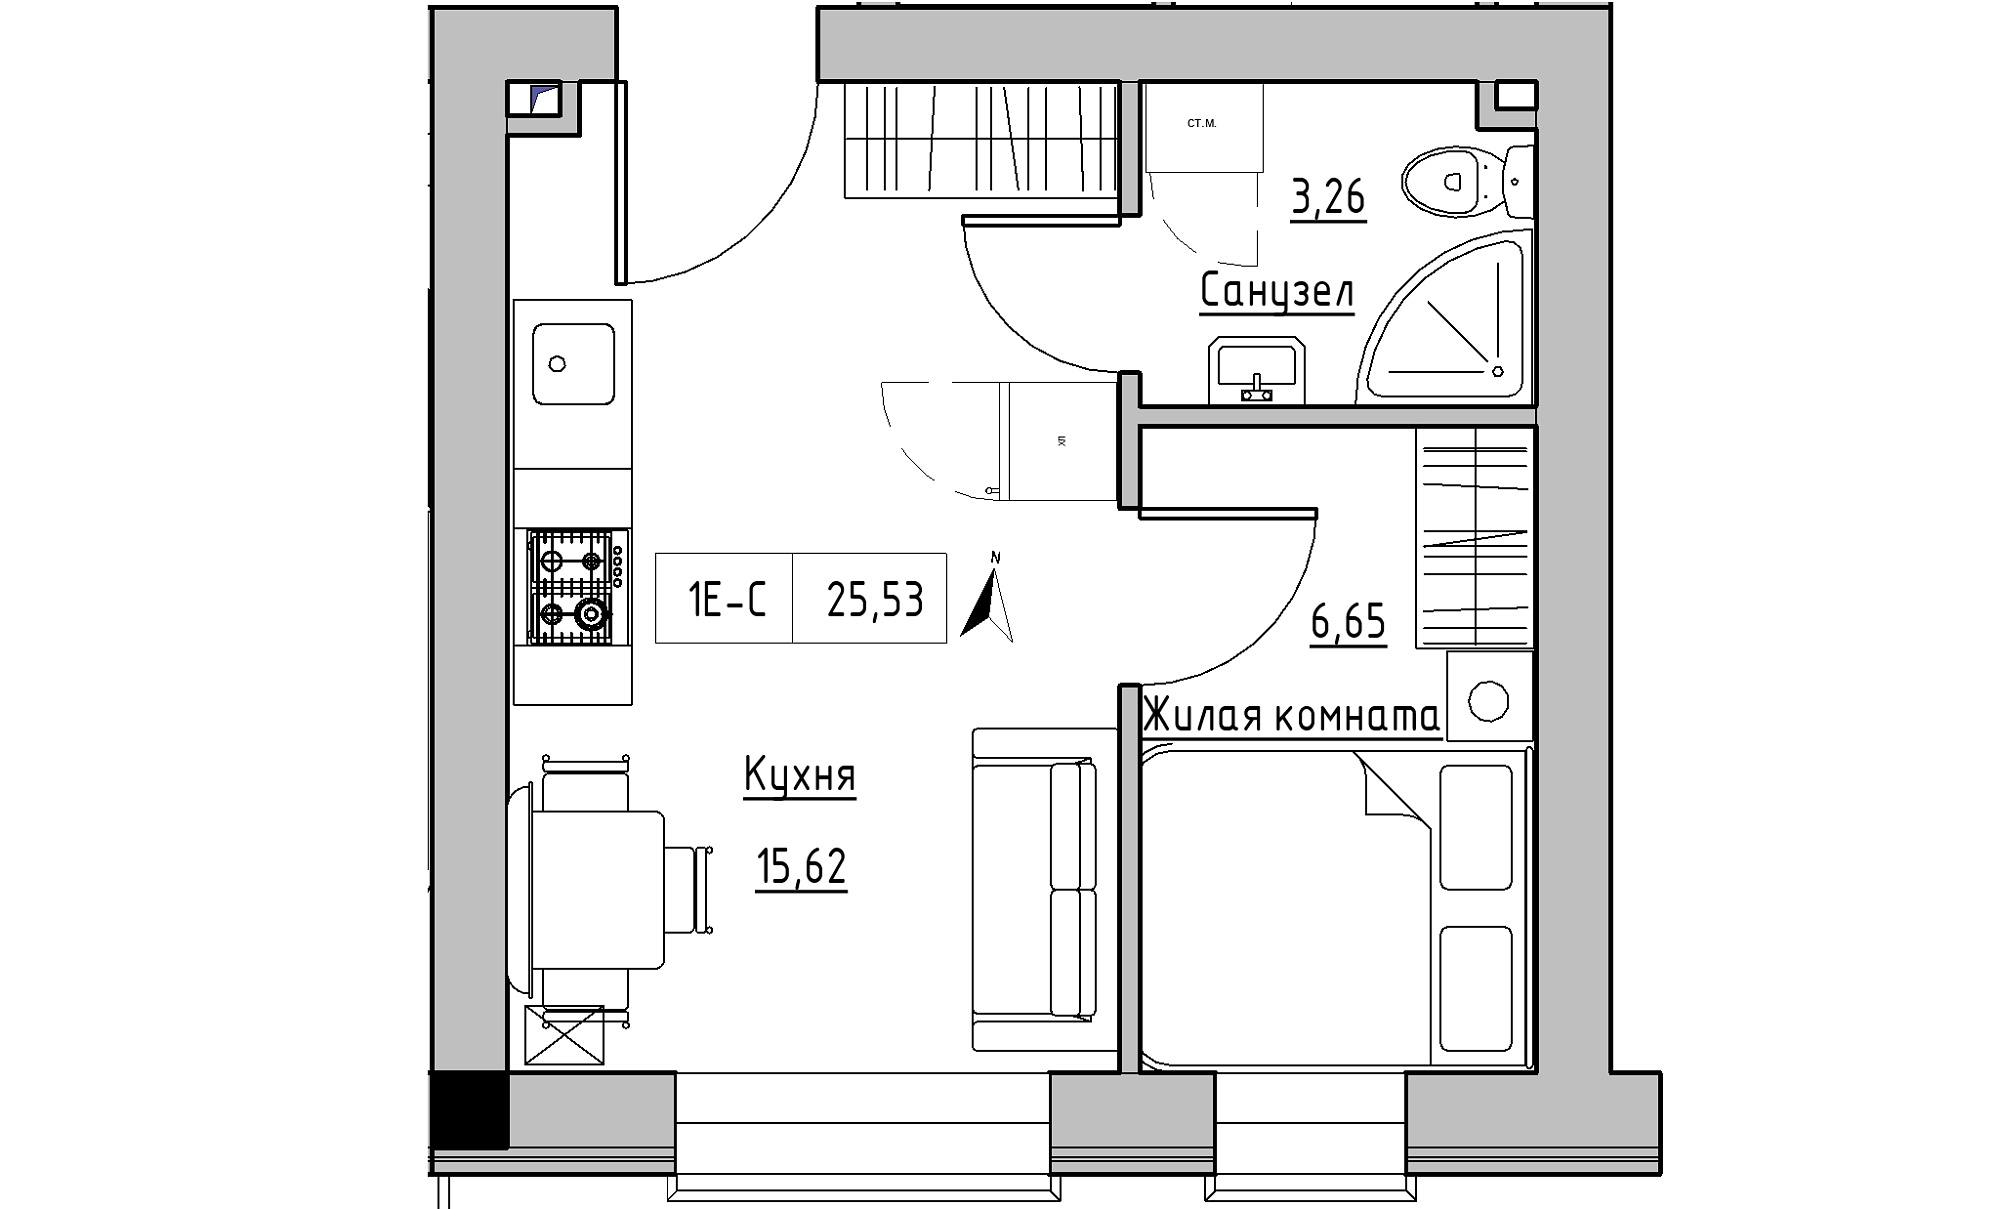 Планування 1-к квартира площею 25.53м2, KS-016-05/0004.